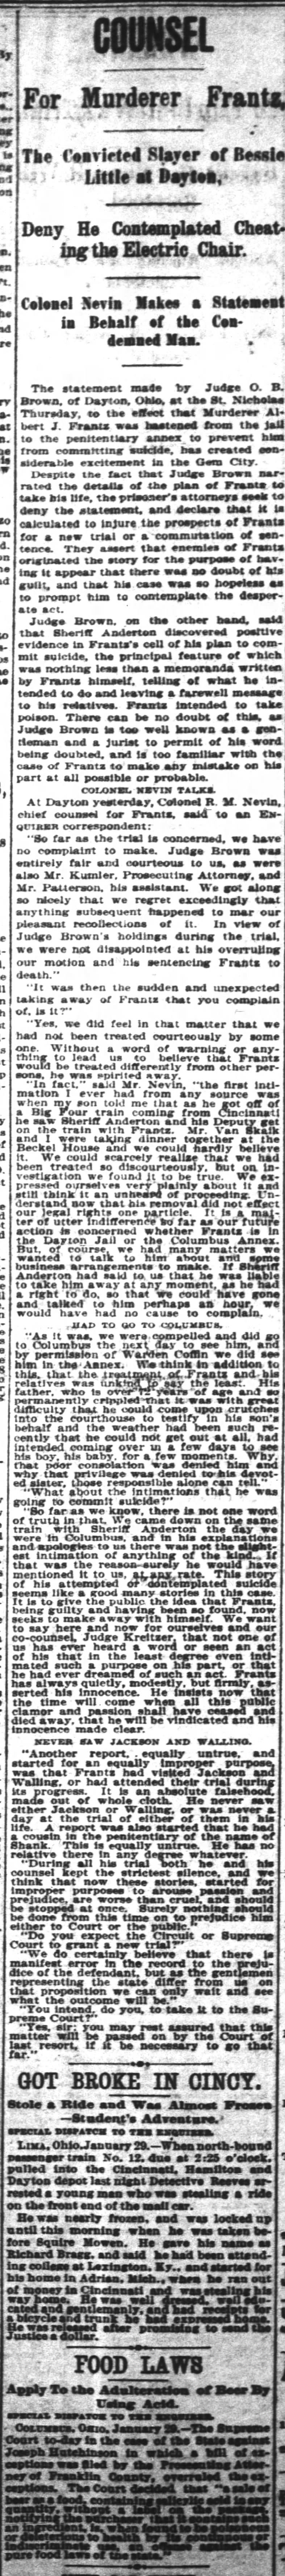 30 January 1897 Cincinnati Enquirer